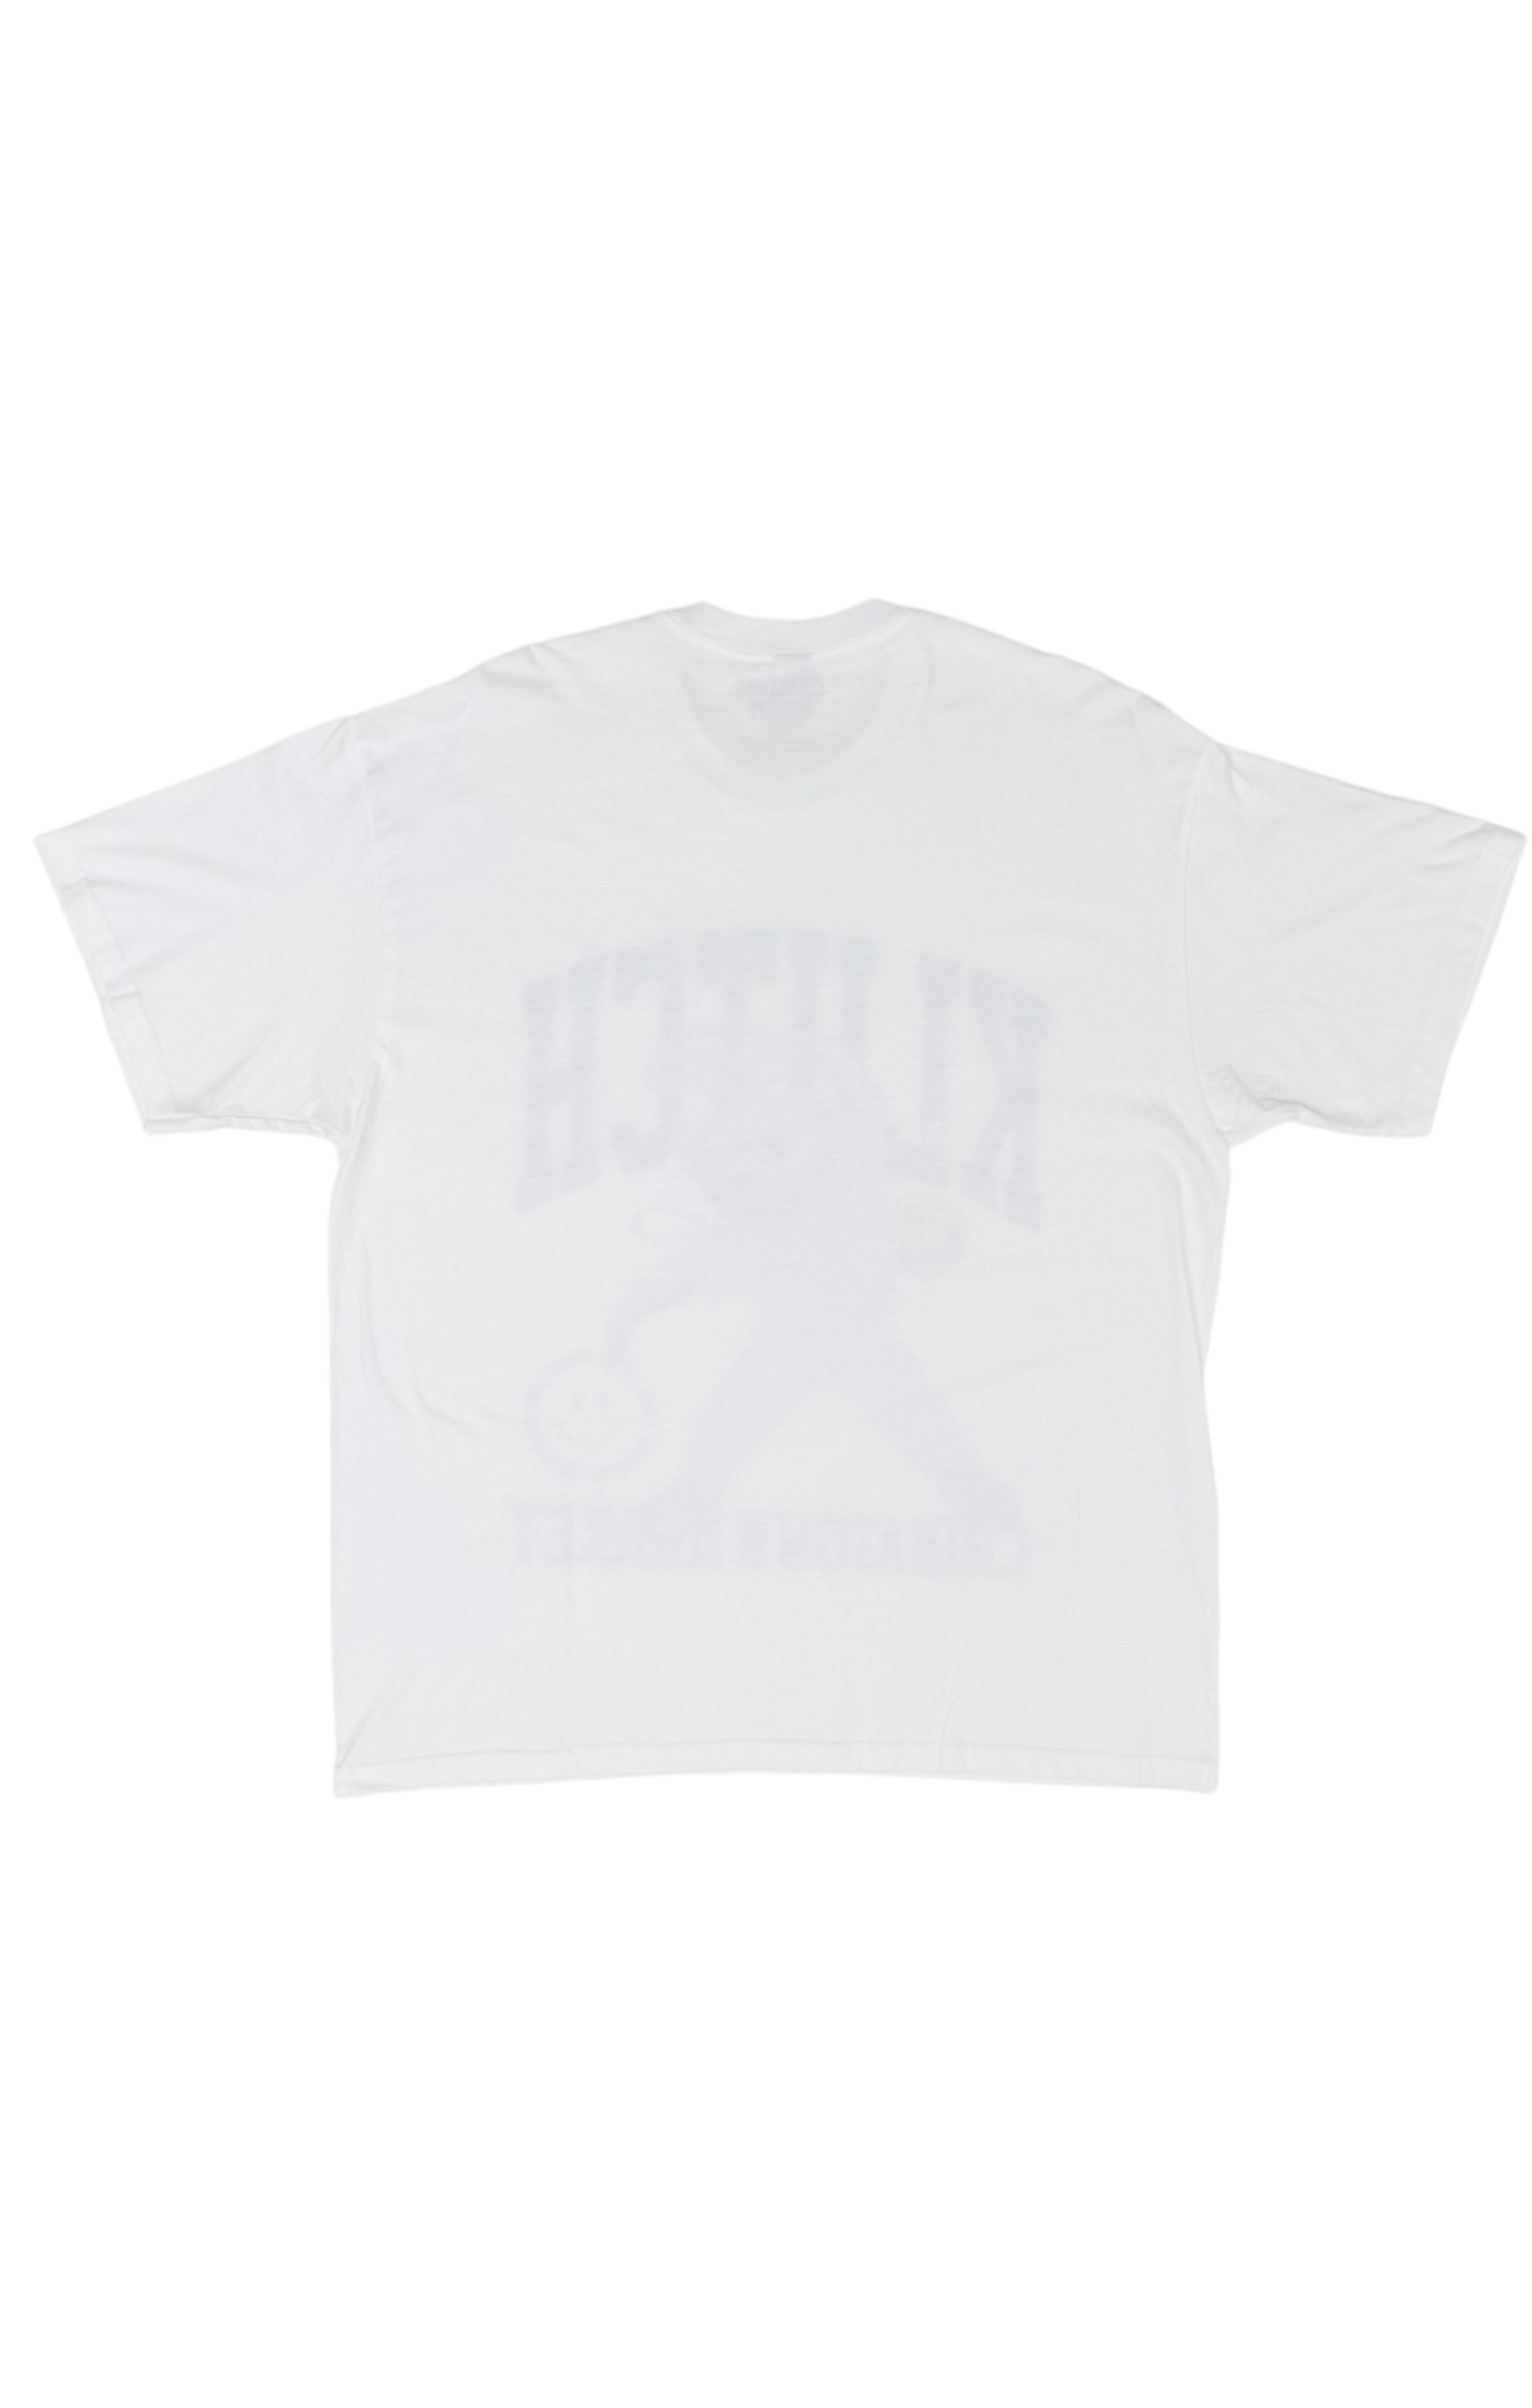 KLUTCH SPORTS x CHINATOWN MARKET T-shirt Size: XL